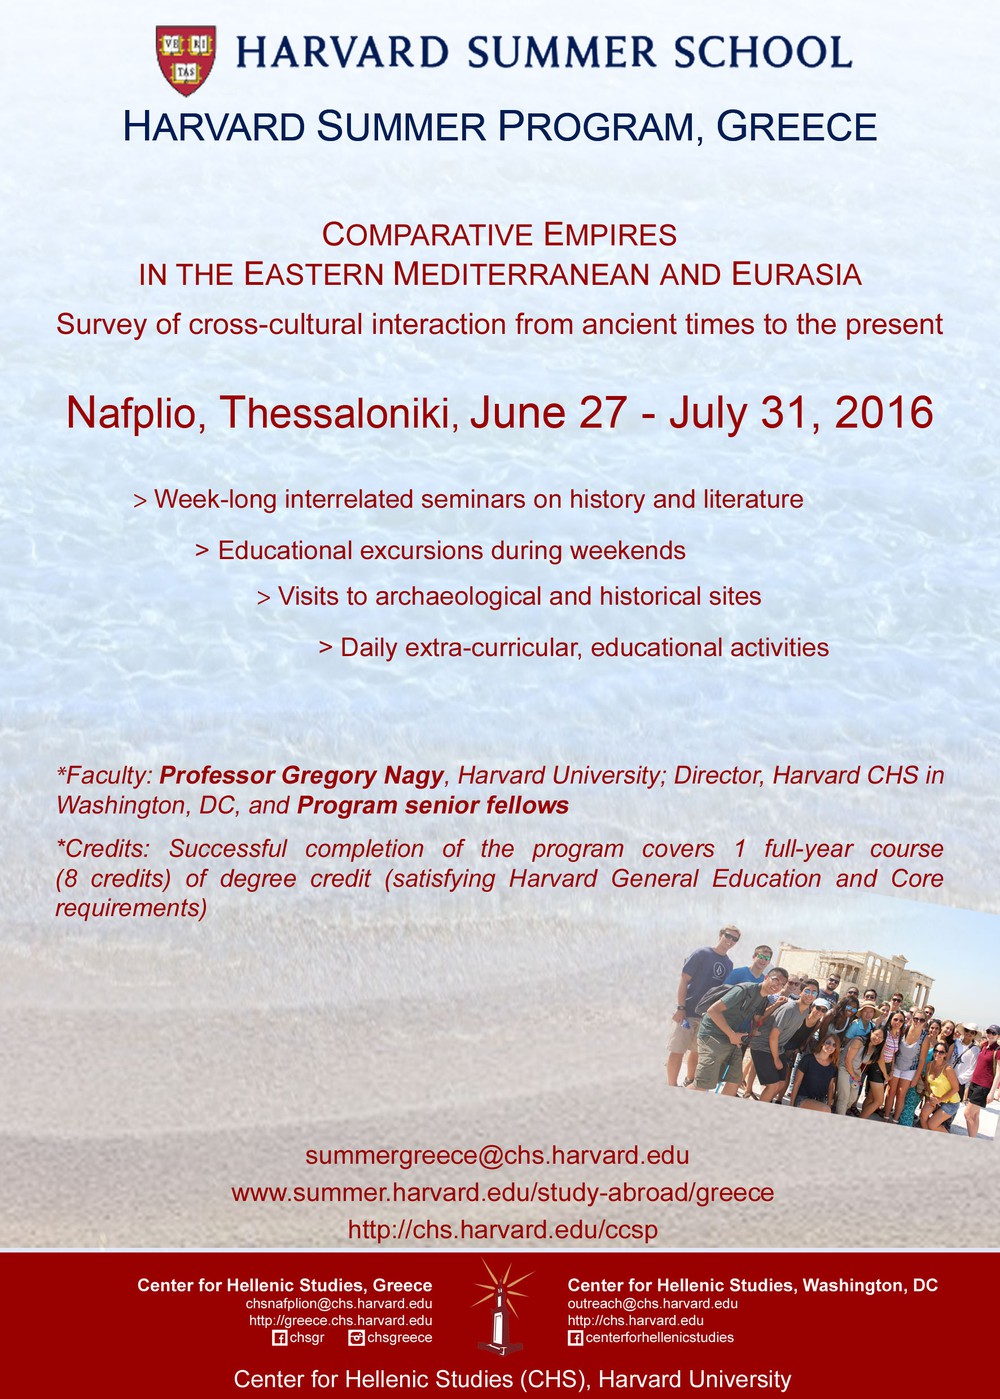 Harvard Summer Program in Greece 2016 poster